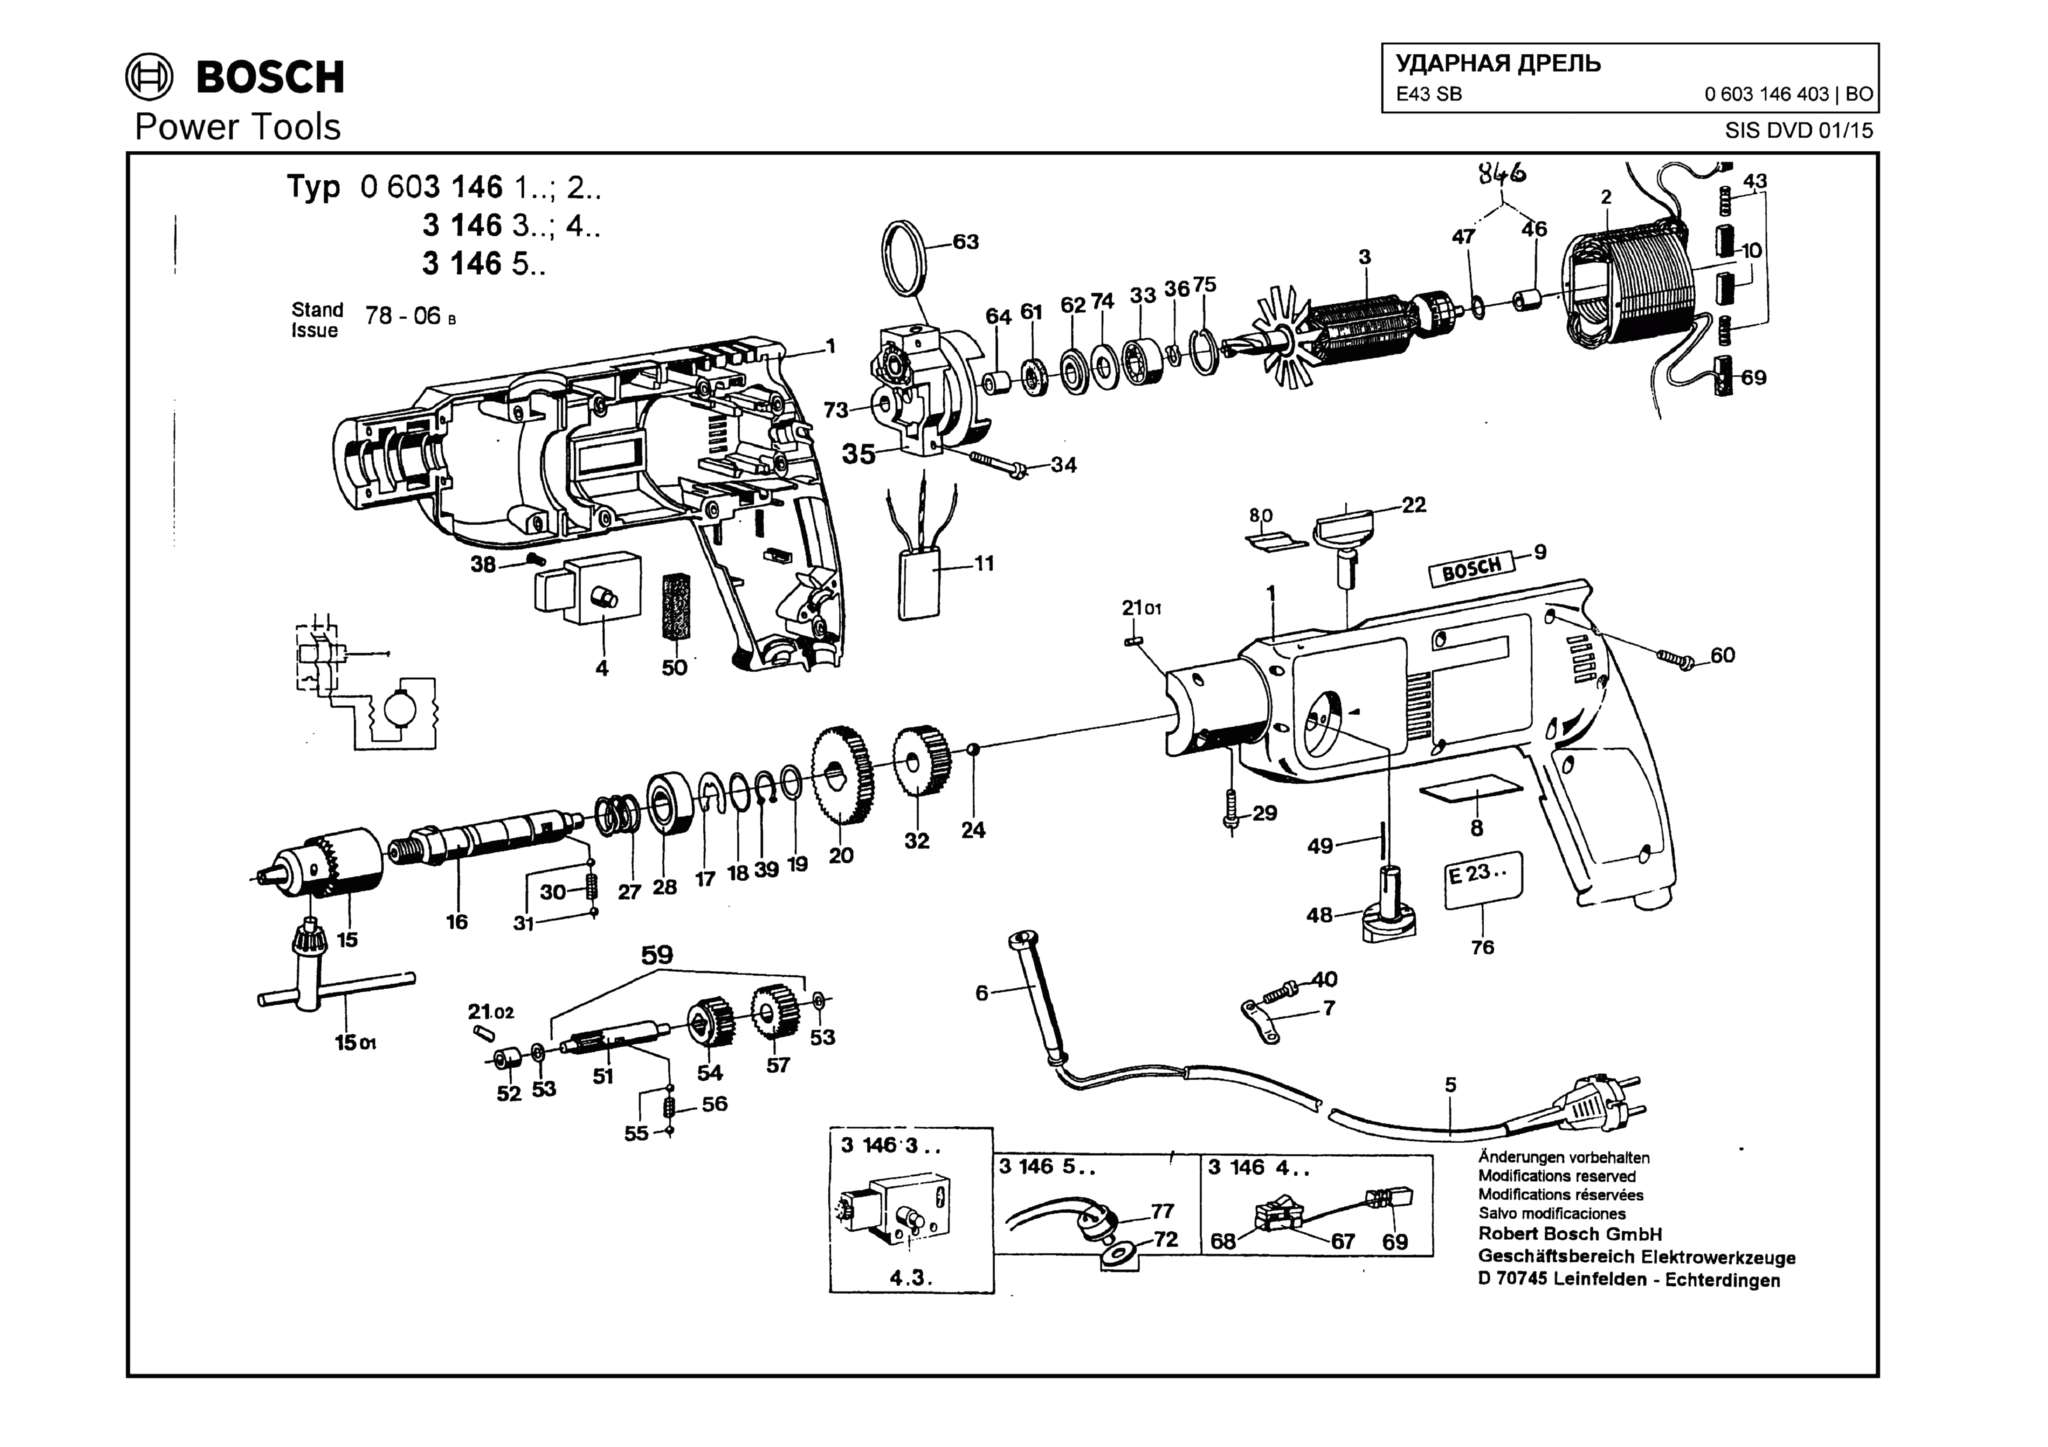 Запчасти, схема и деталировка Bosch E43 SB (ТИП 0603146403)